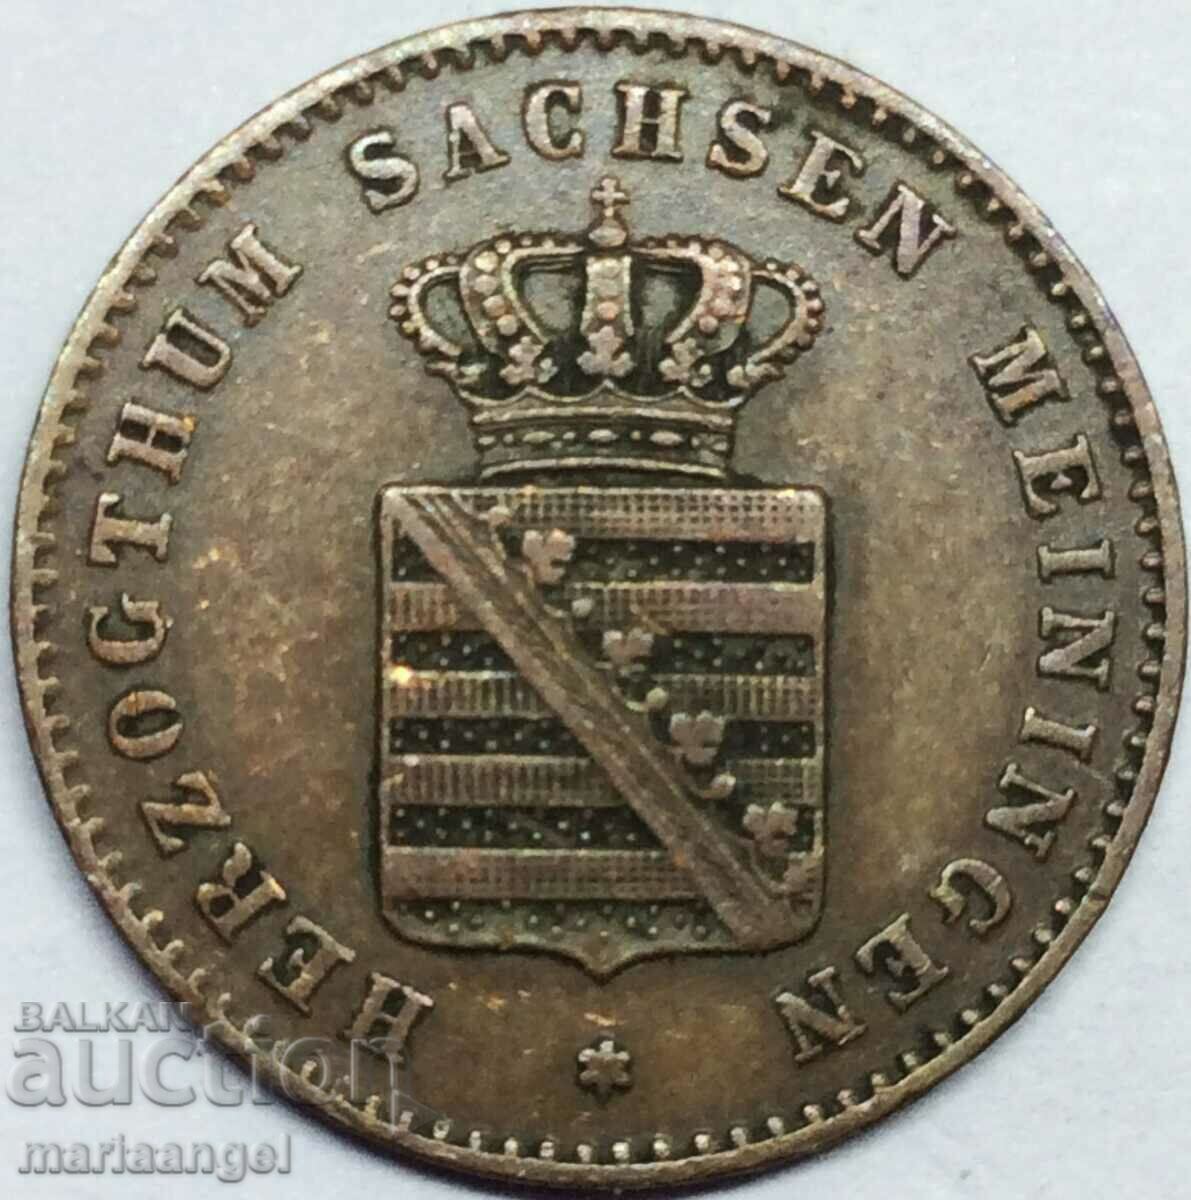 Саксония 2 пфенига 1865 Германия- доста рядка